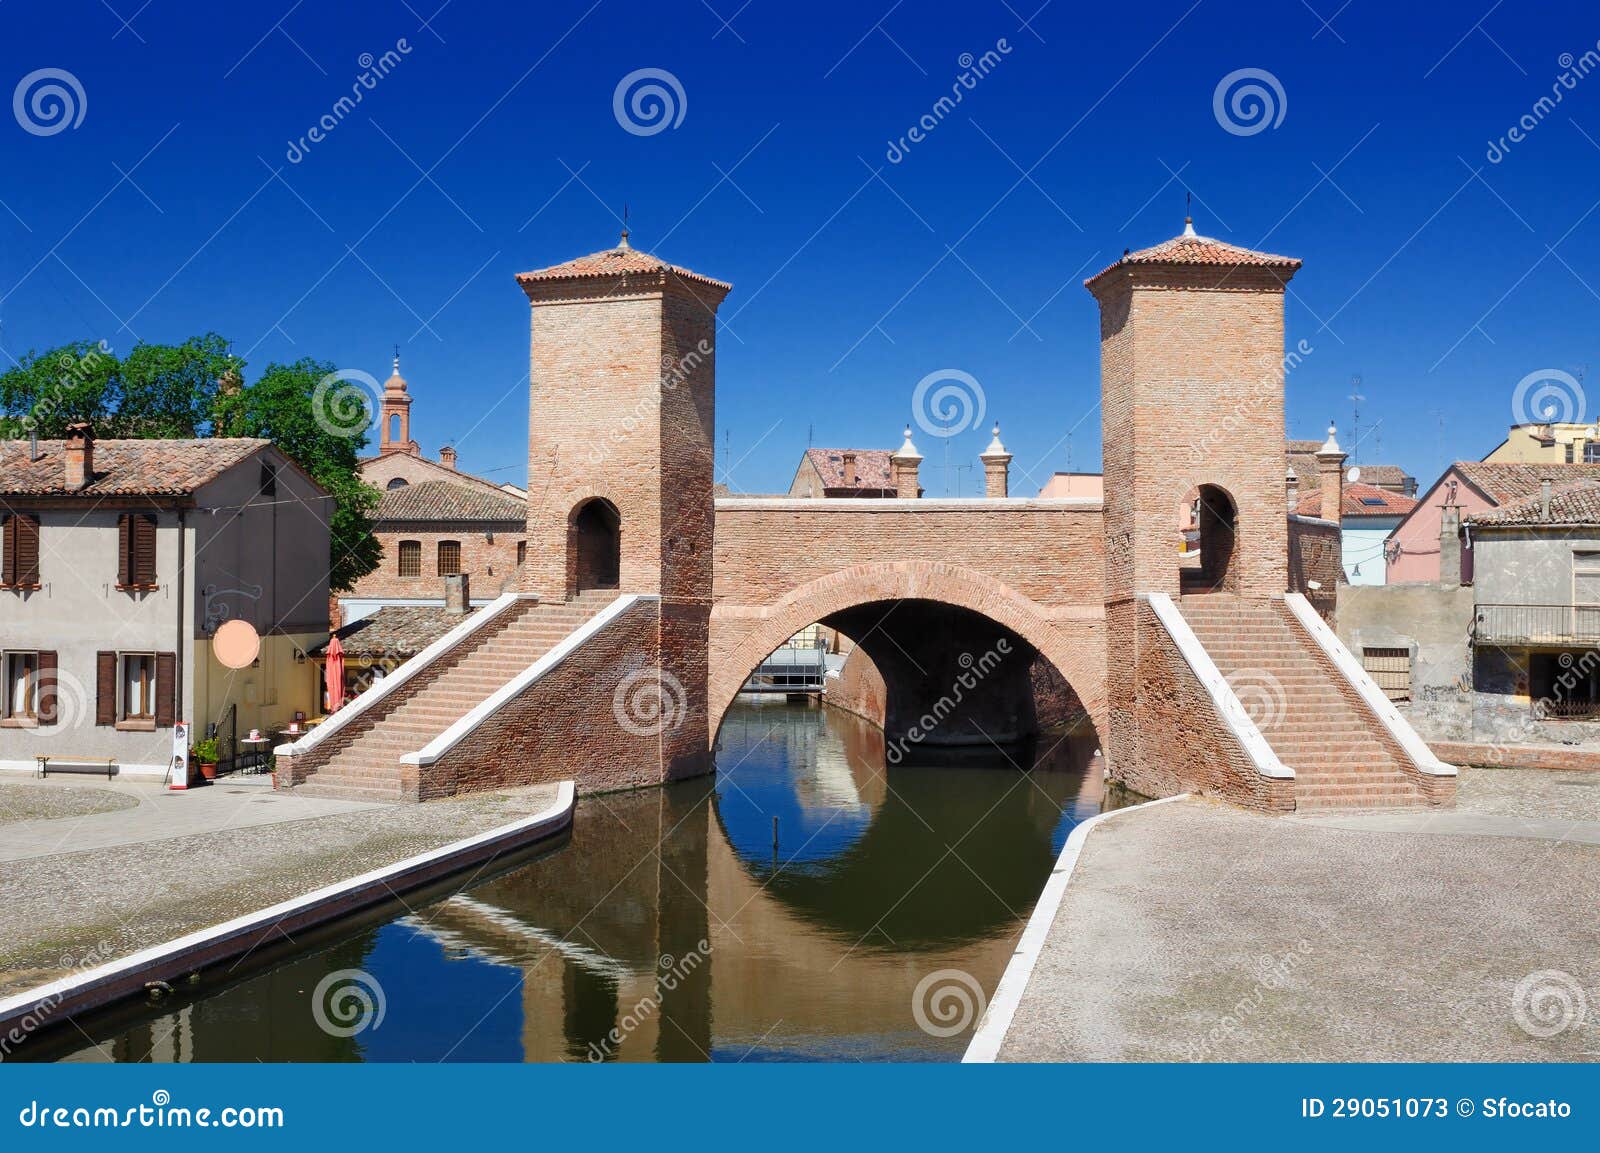 trepponti bridge of comacchio, ferrara, emilia romagna, italy